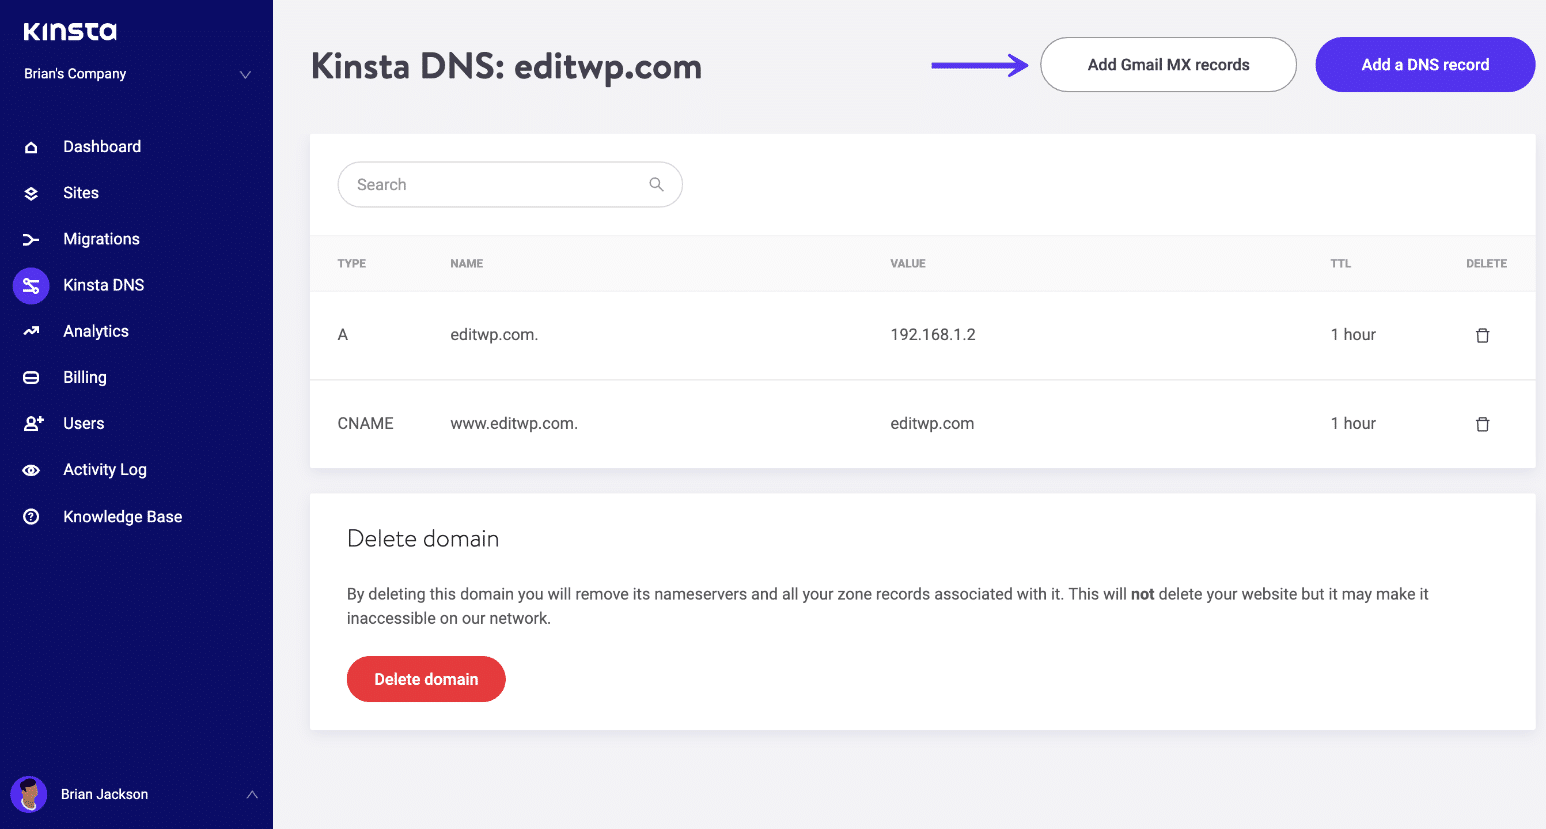 Kinsta DNSのGmail MXレコードを追加する